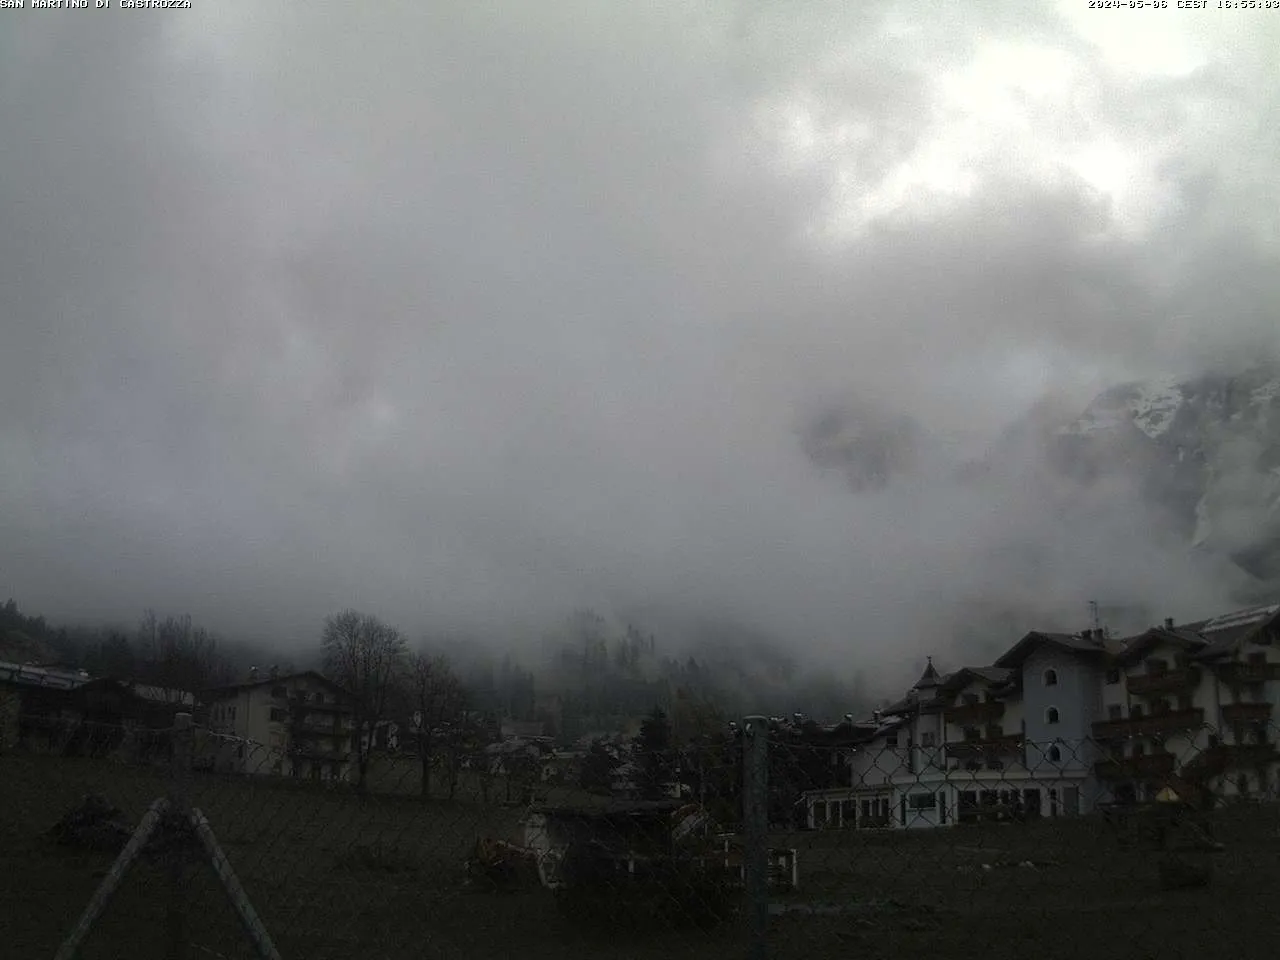 webcam San Martino di Castrozza, webcam provincia di Trento,
                                            webcam Trentino-Alto Adige, webcam alpi